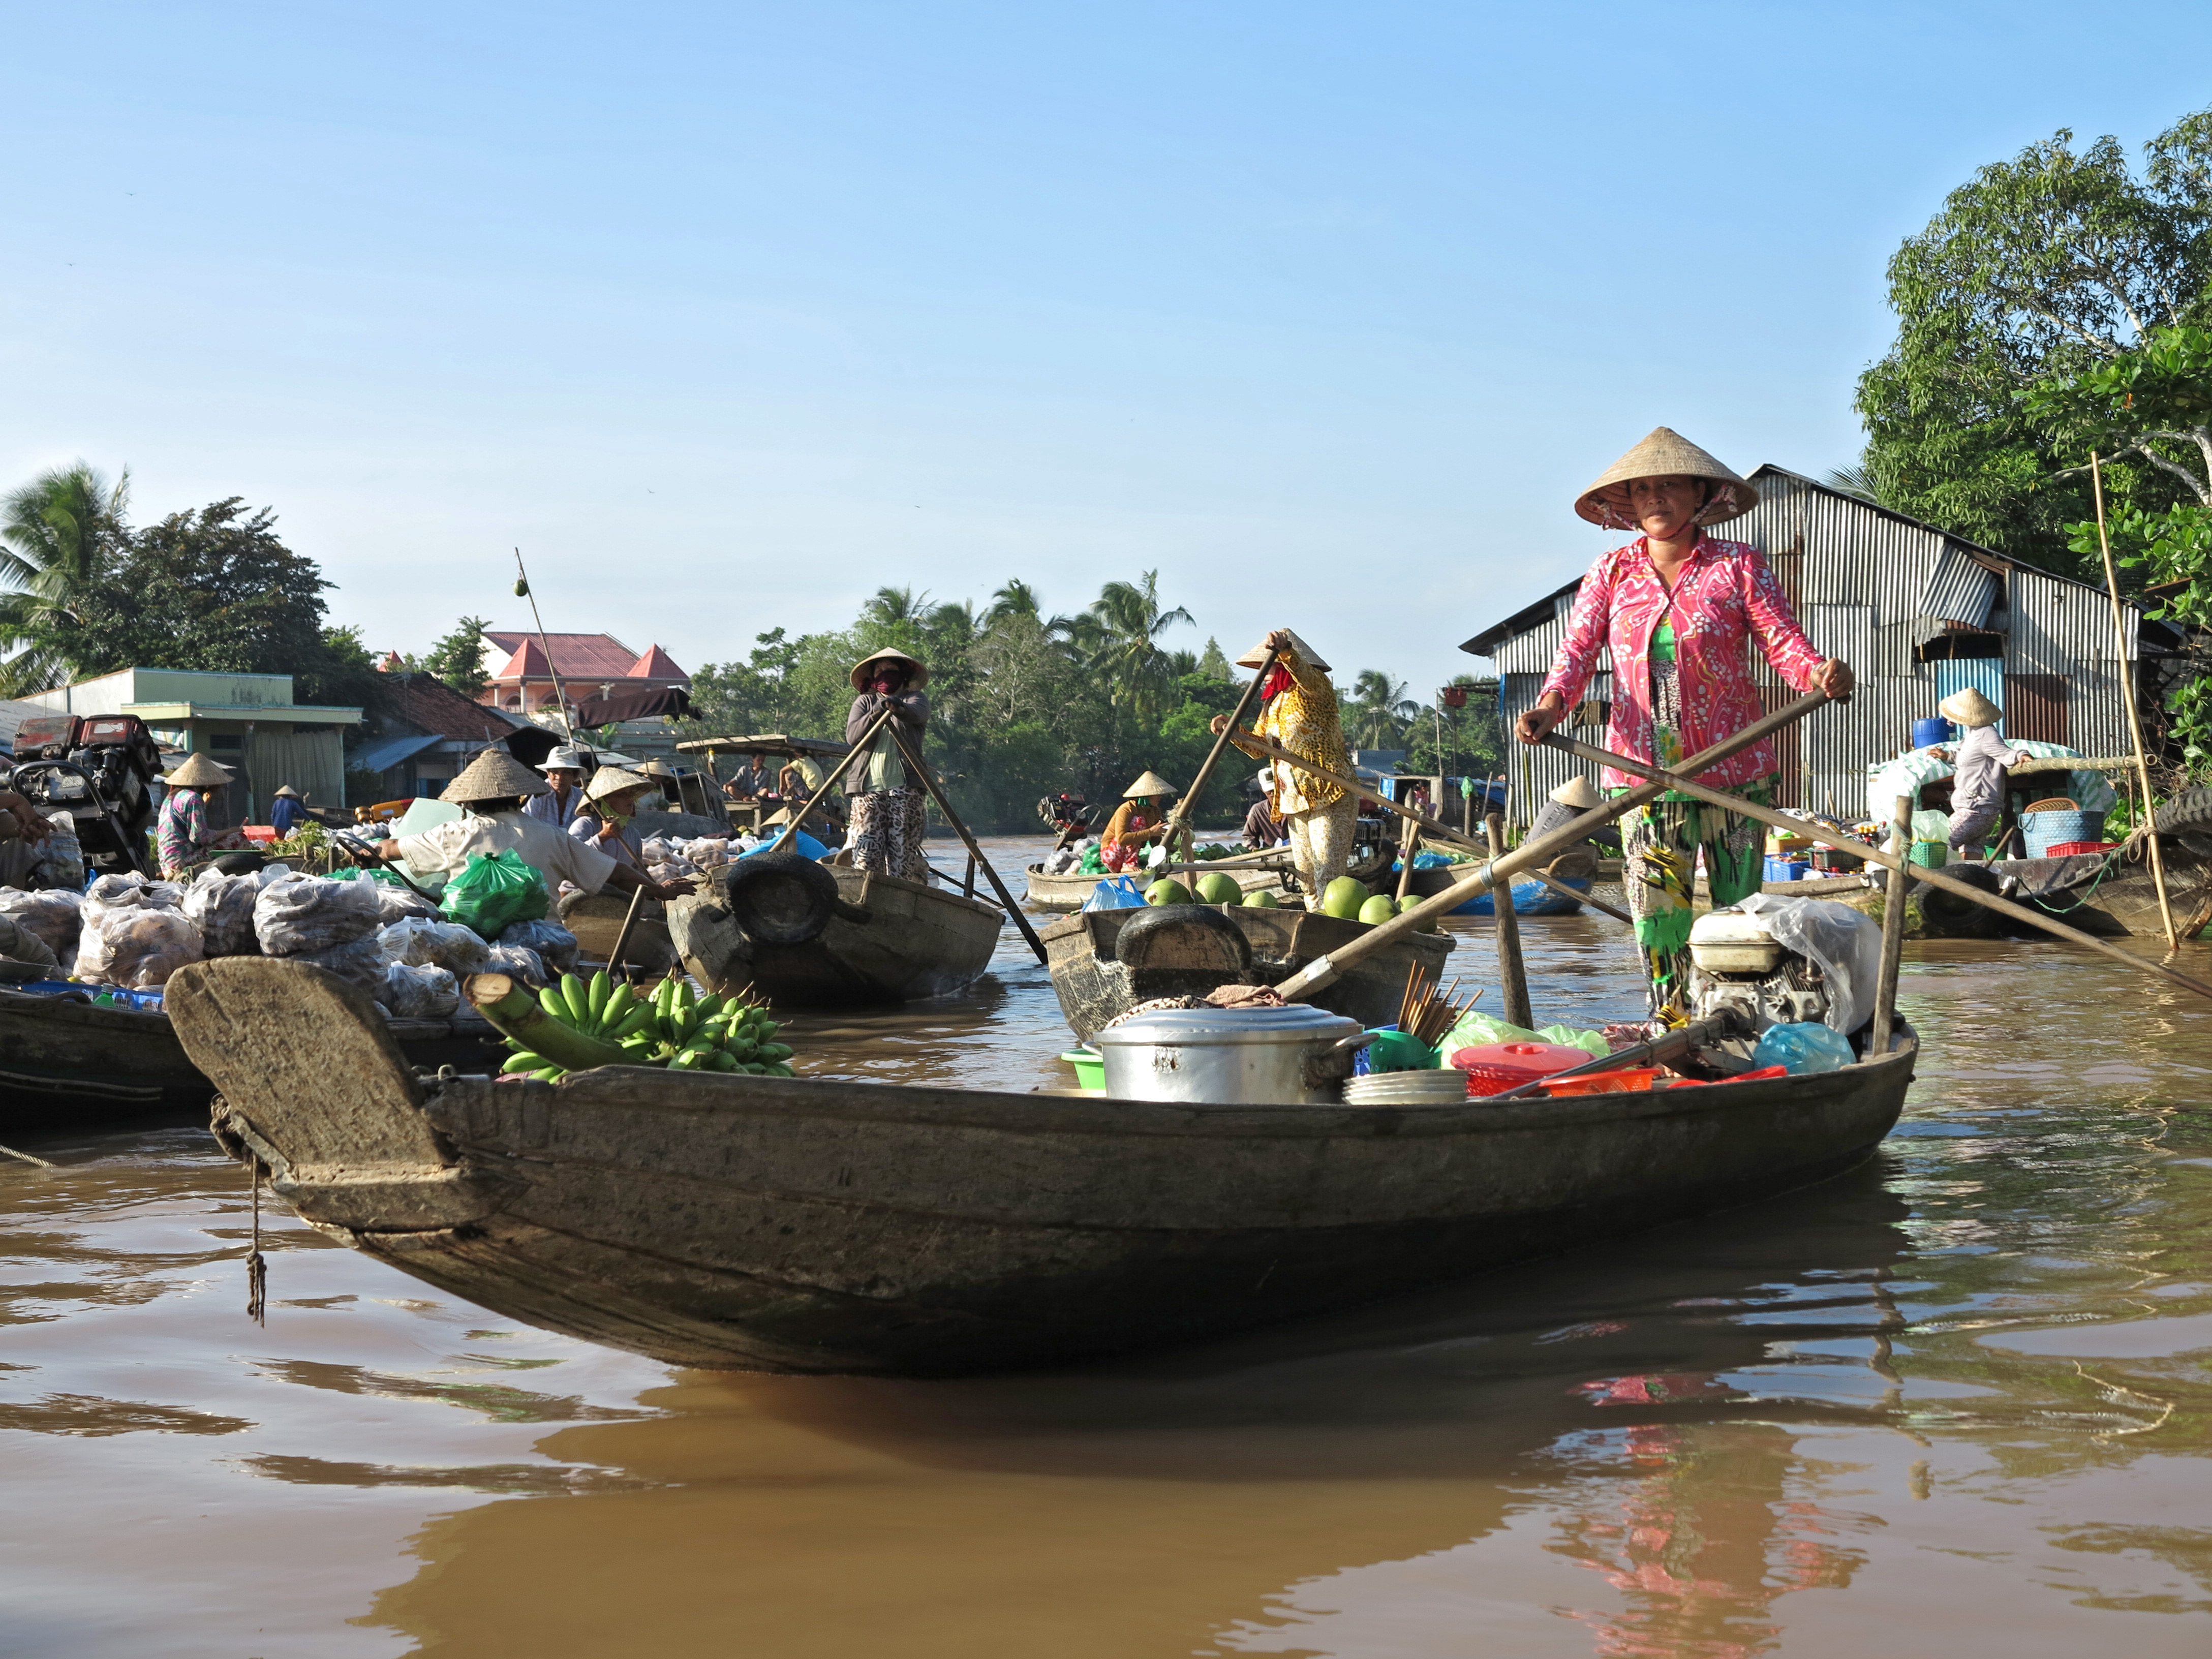 merchant on boat in Vietnam